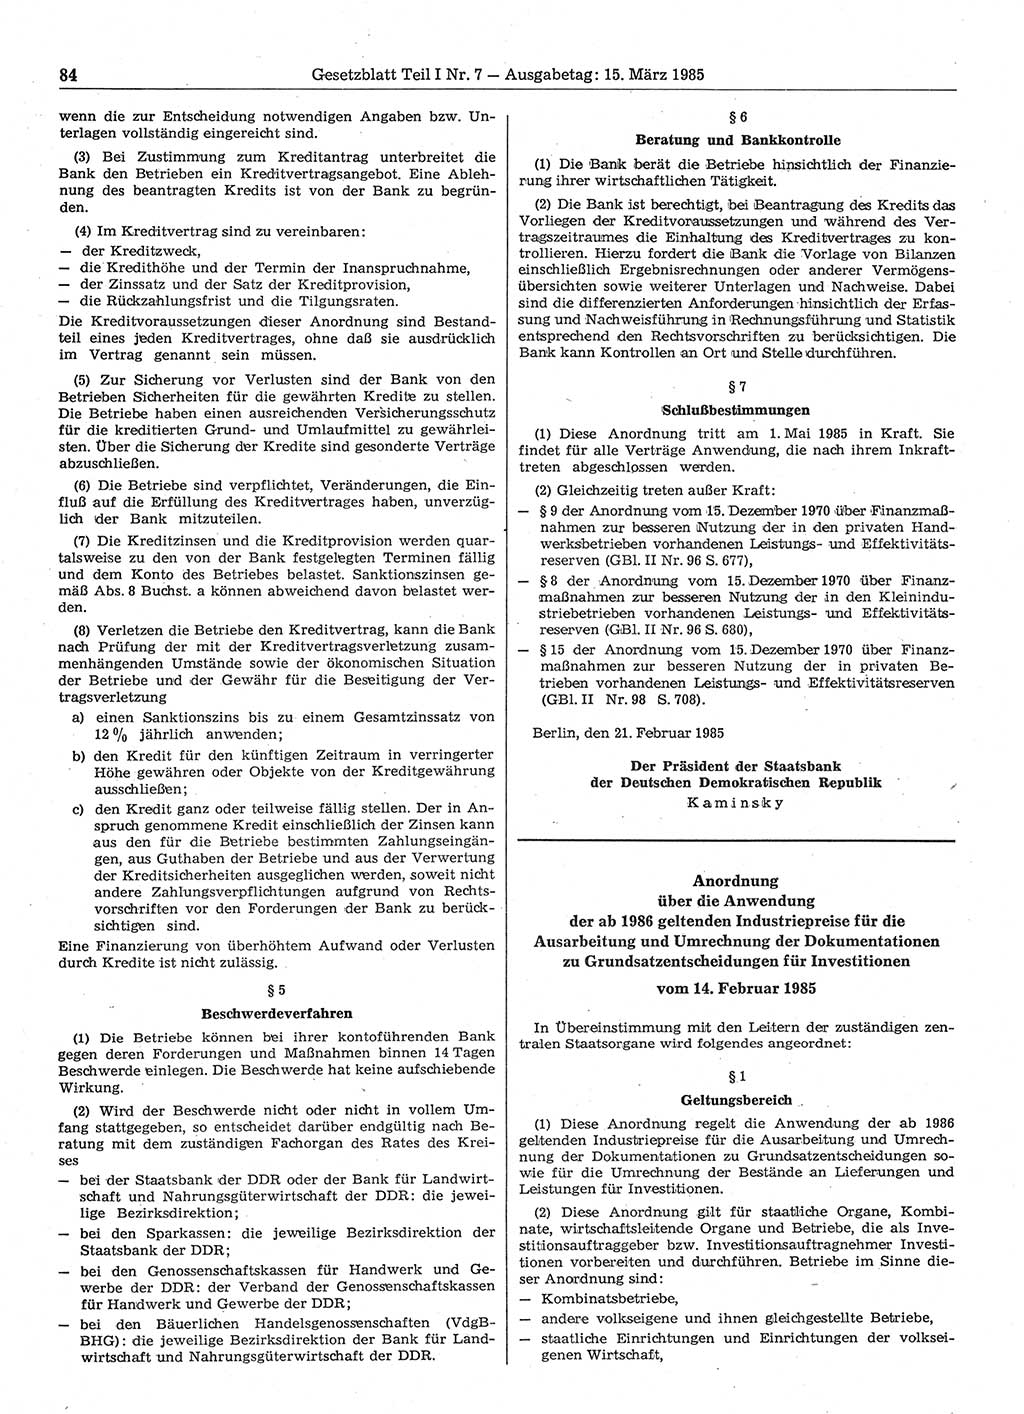 Gesetzblatt (GBl.) der Deutschen Demokratischen Republik (DDR) Teil Ⅰ 1985, Seite 84 (GBl. DDR Ⅰ 1985, S. 84)